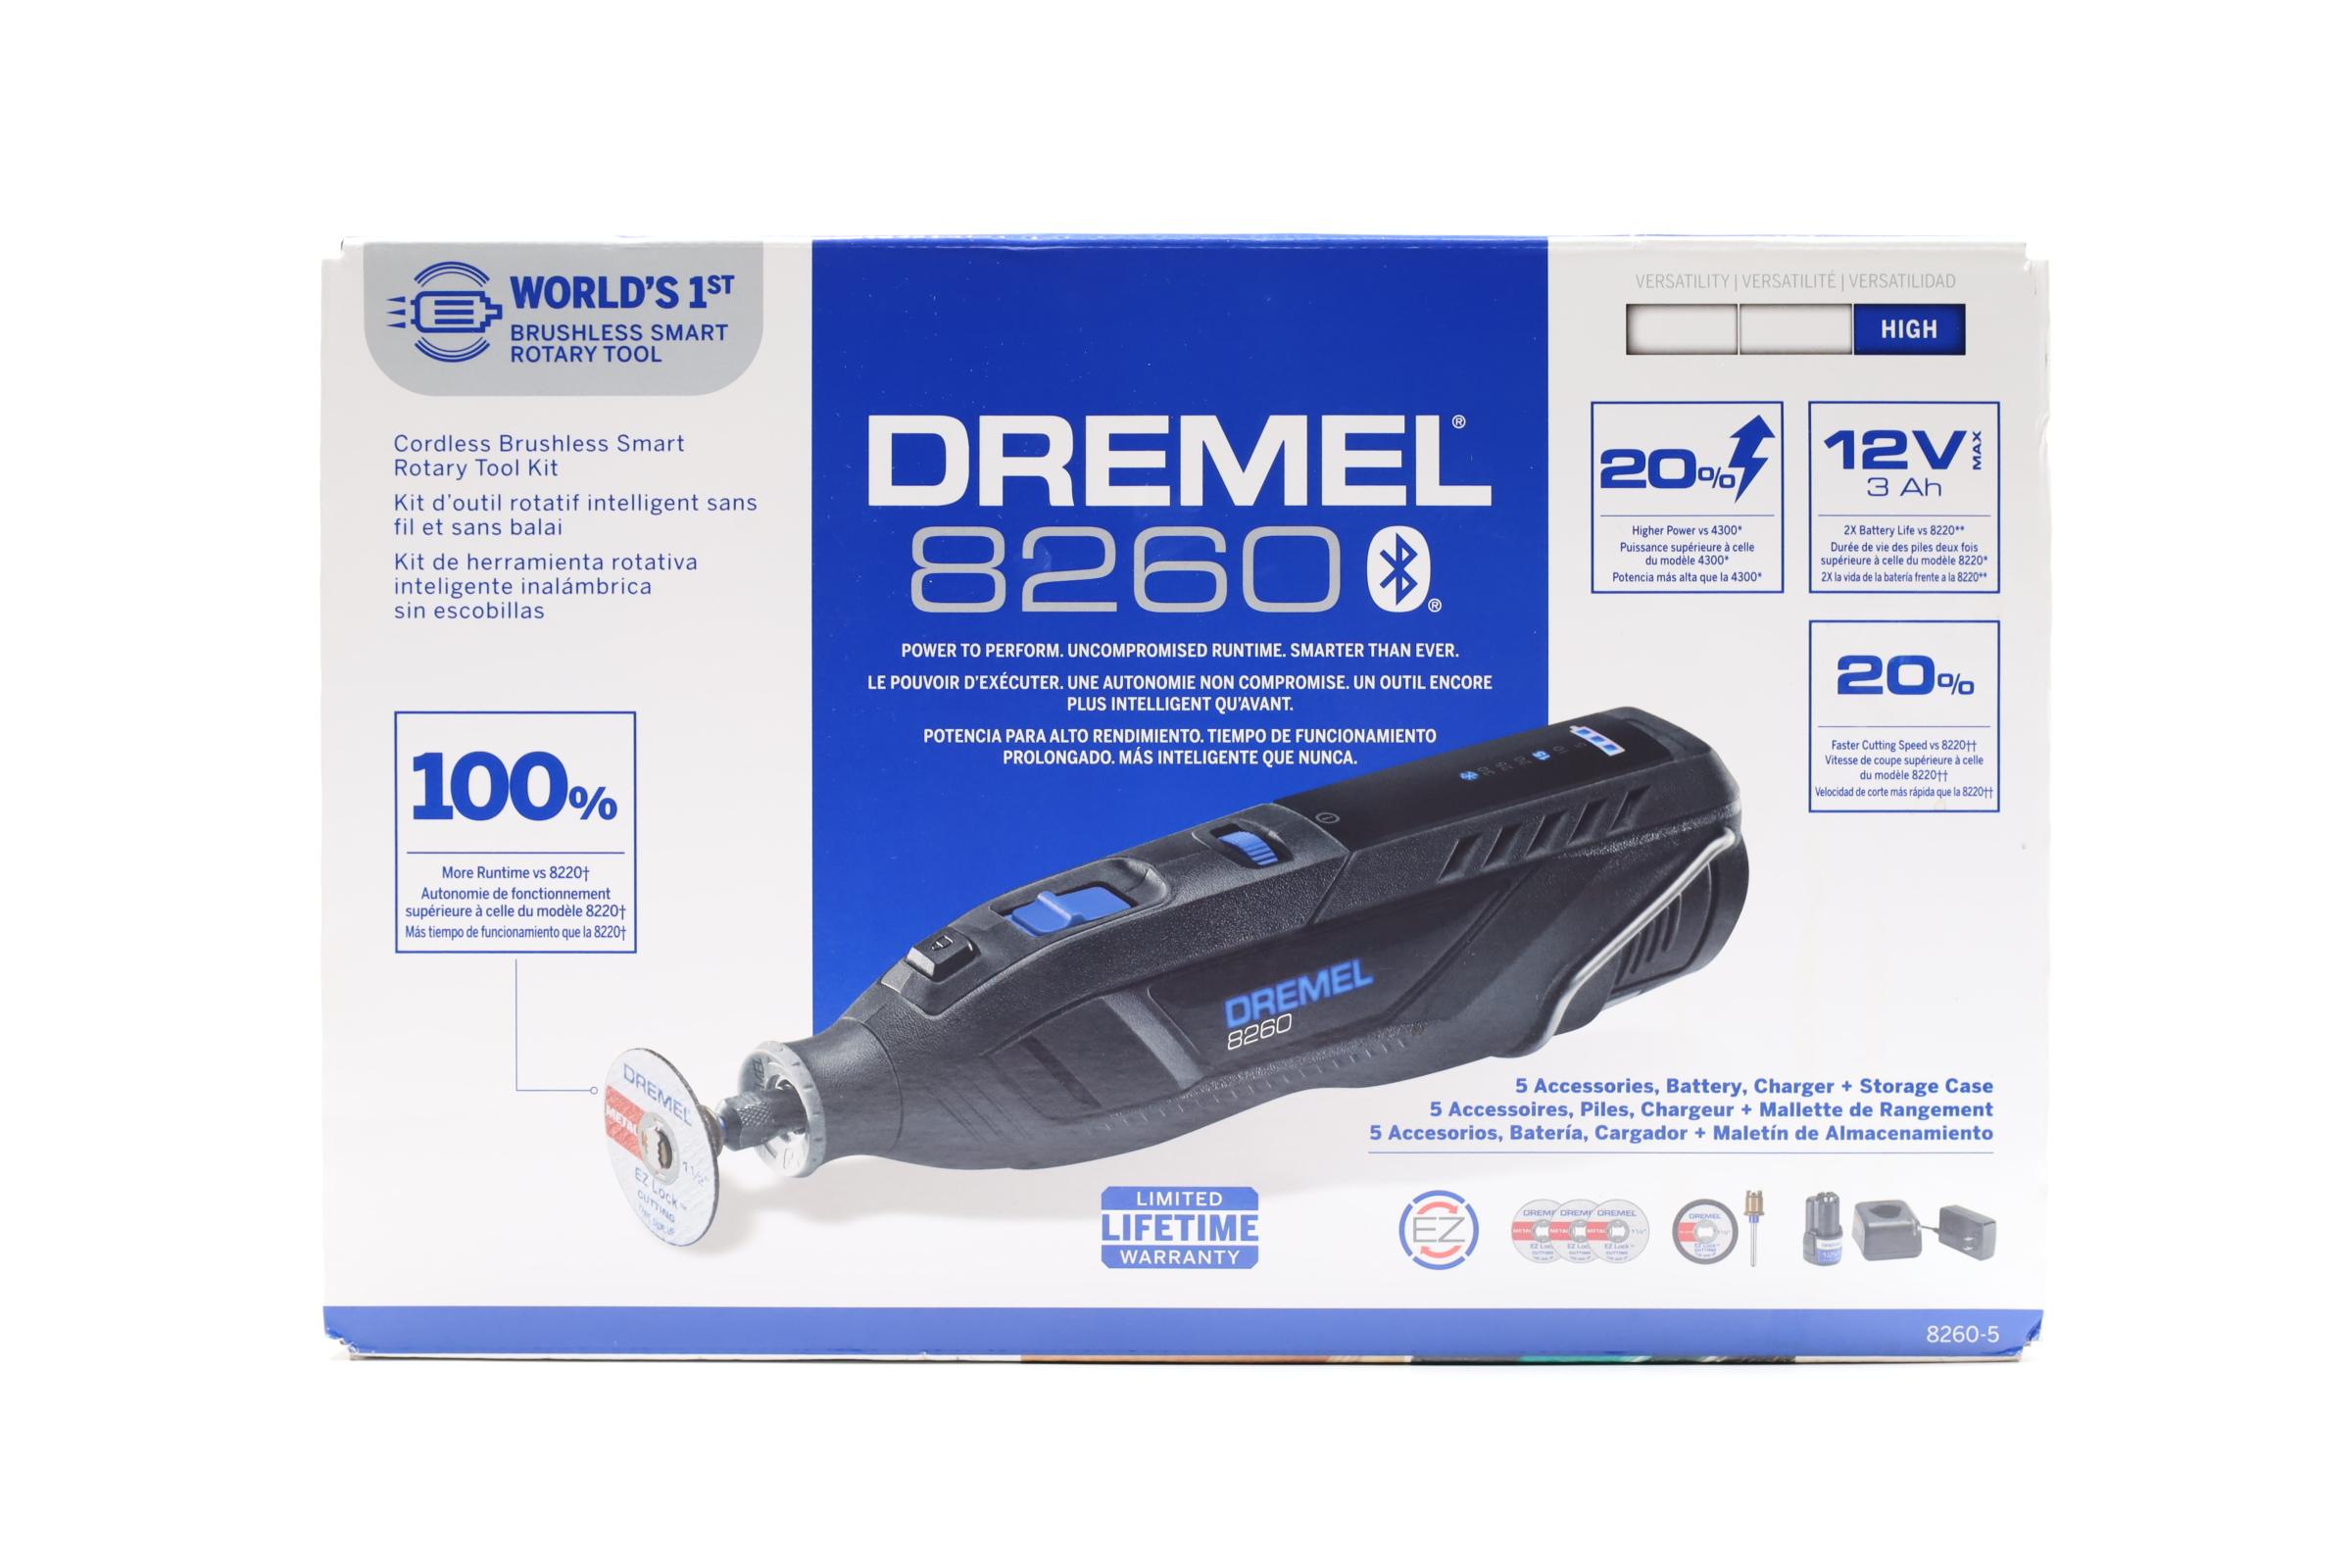 Dremel 8260 - The World's 1st Brushless SMART Rotary Tool! 